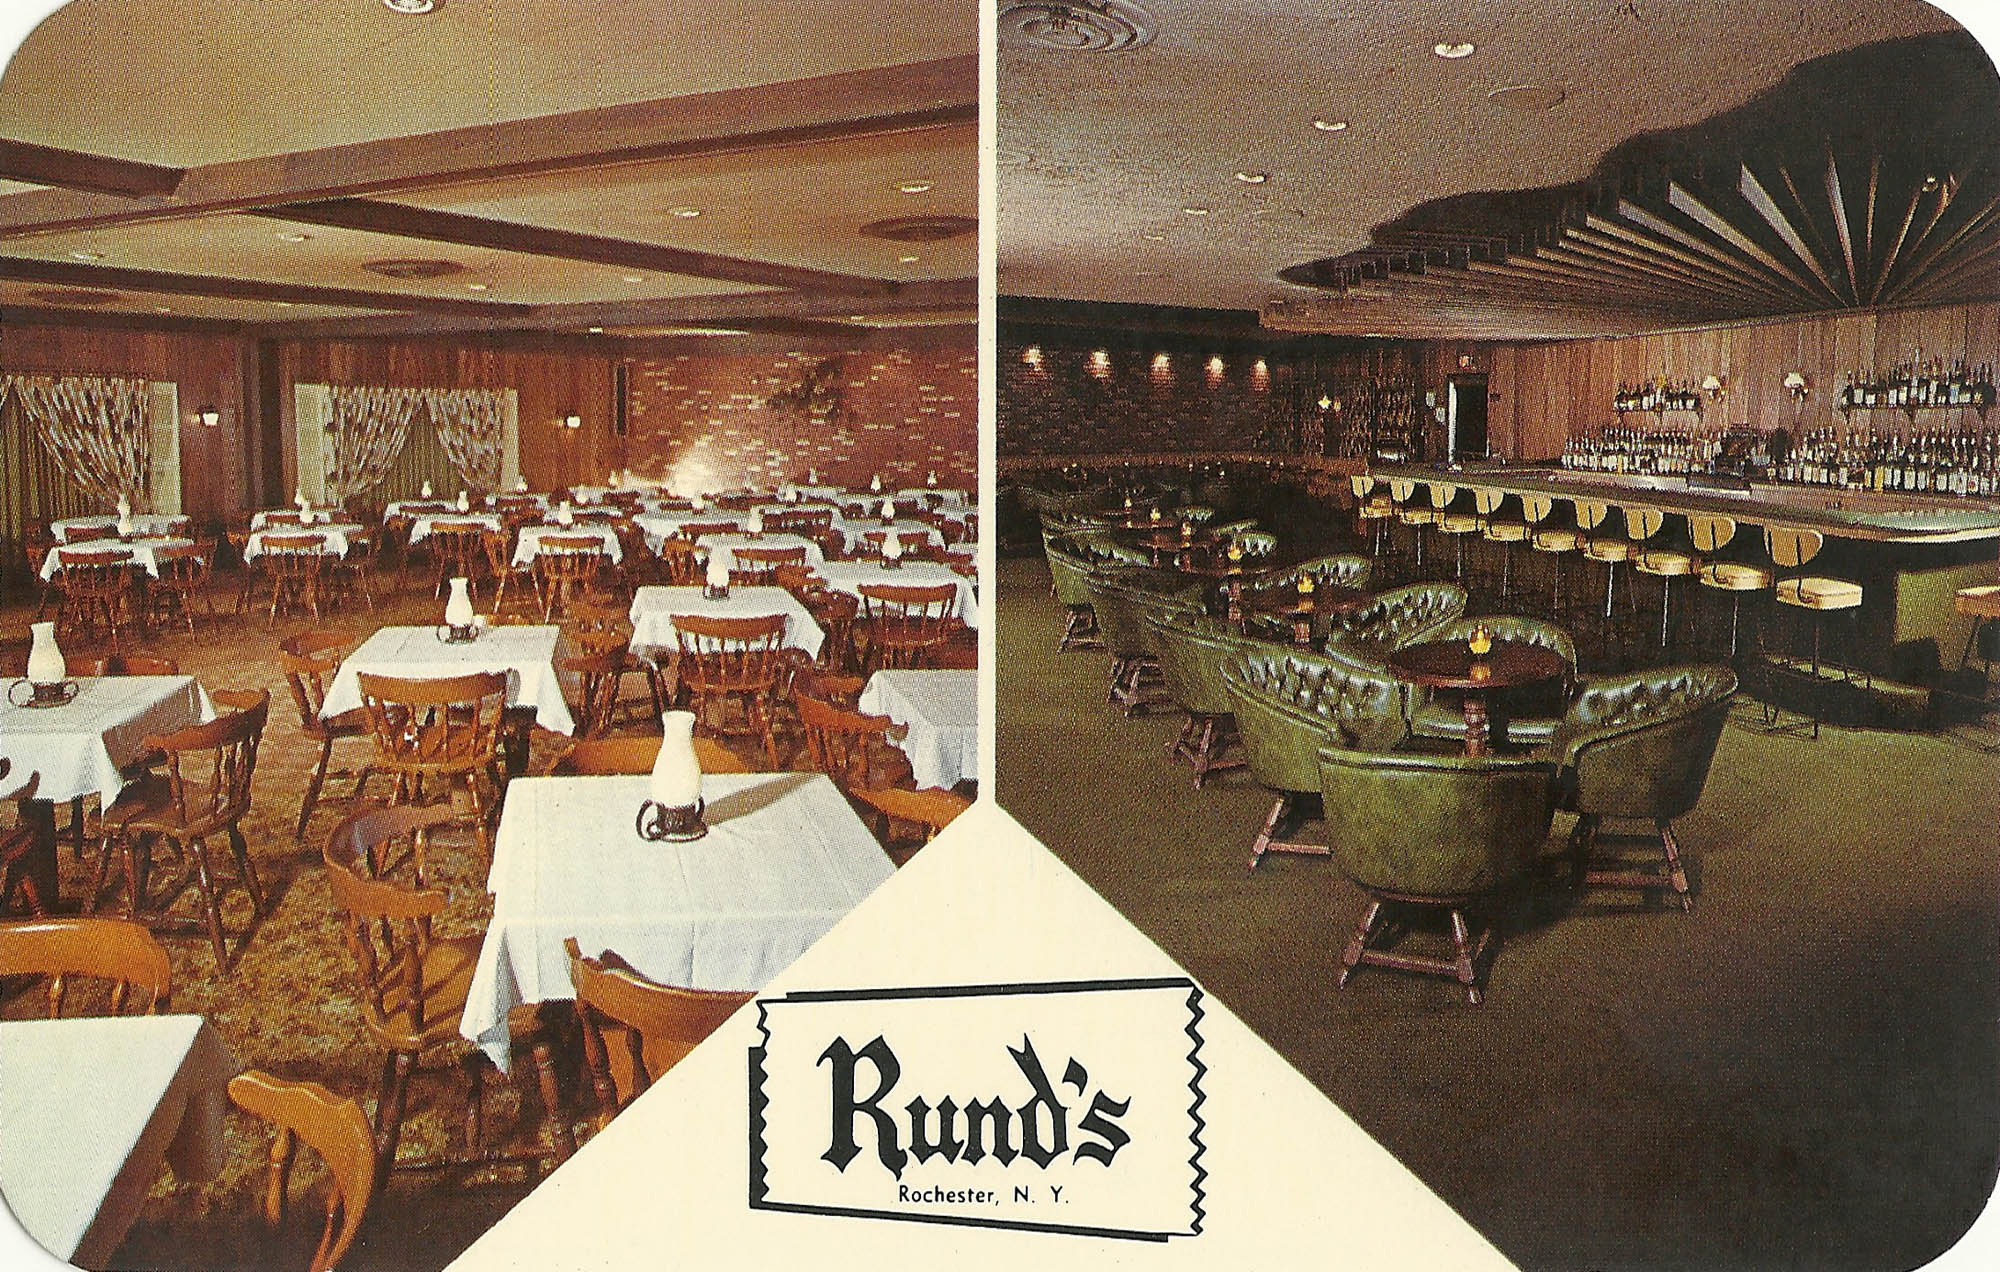 Rund's Restaurant